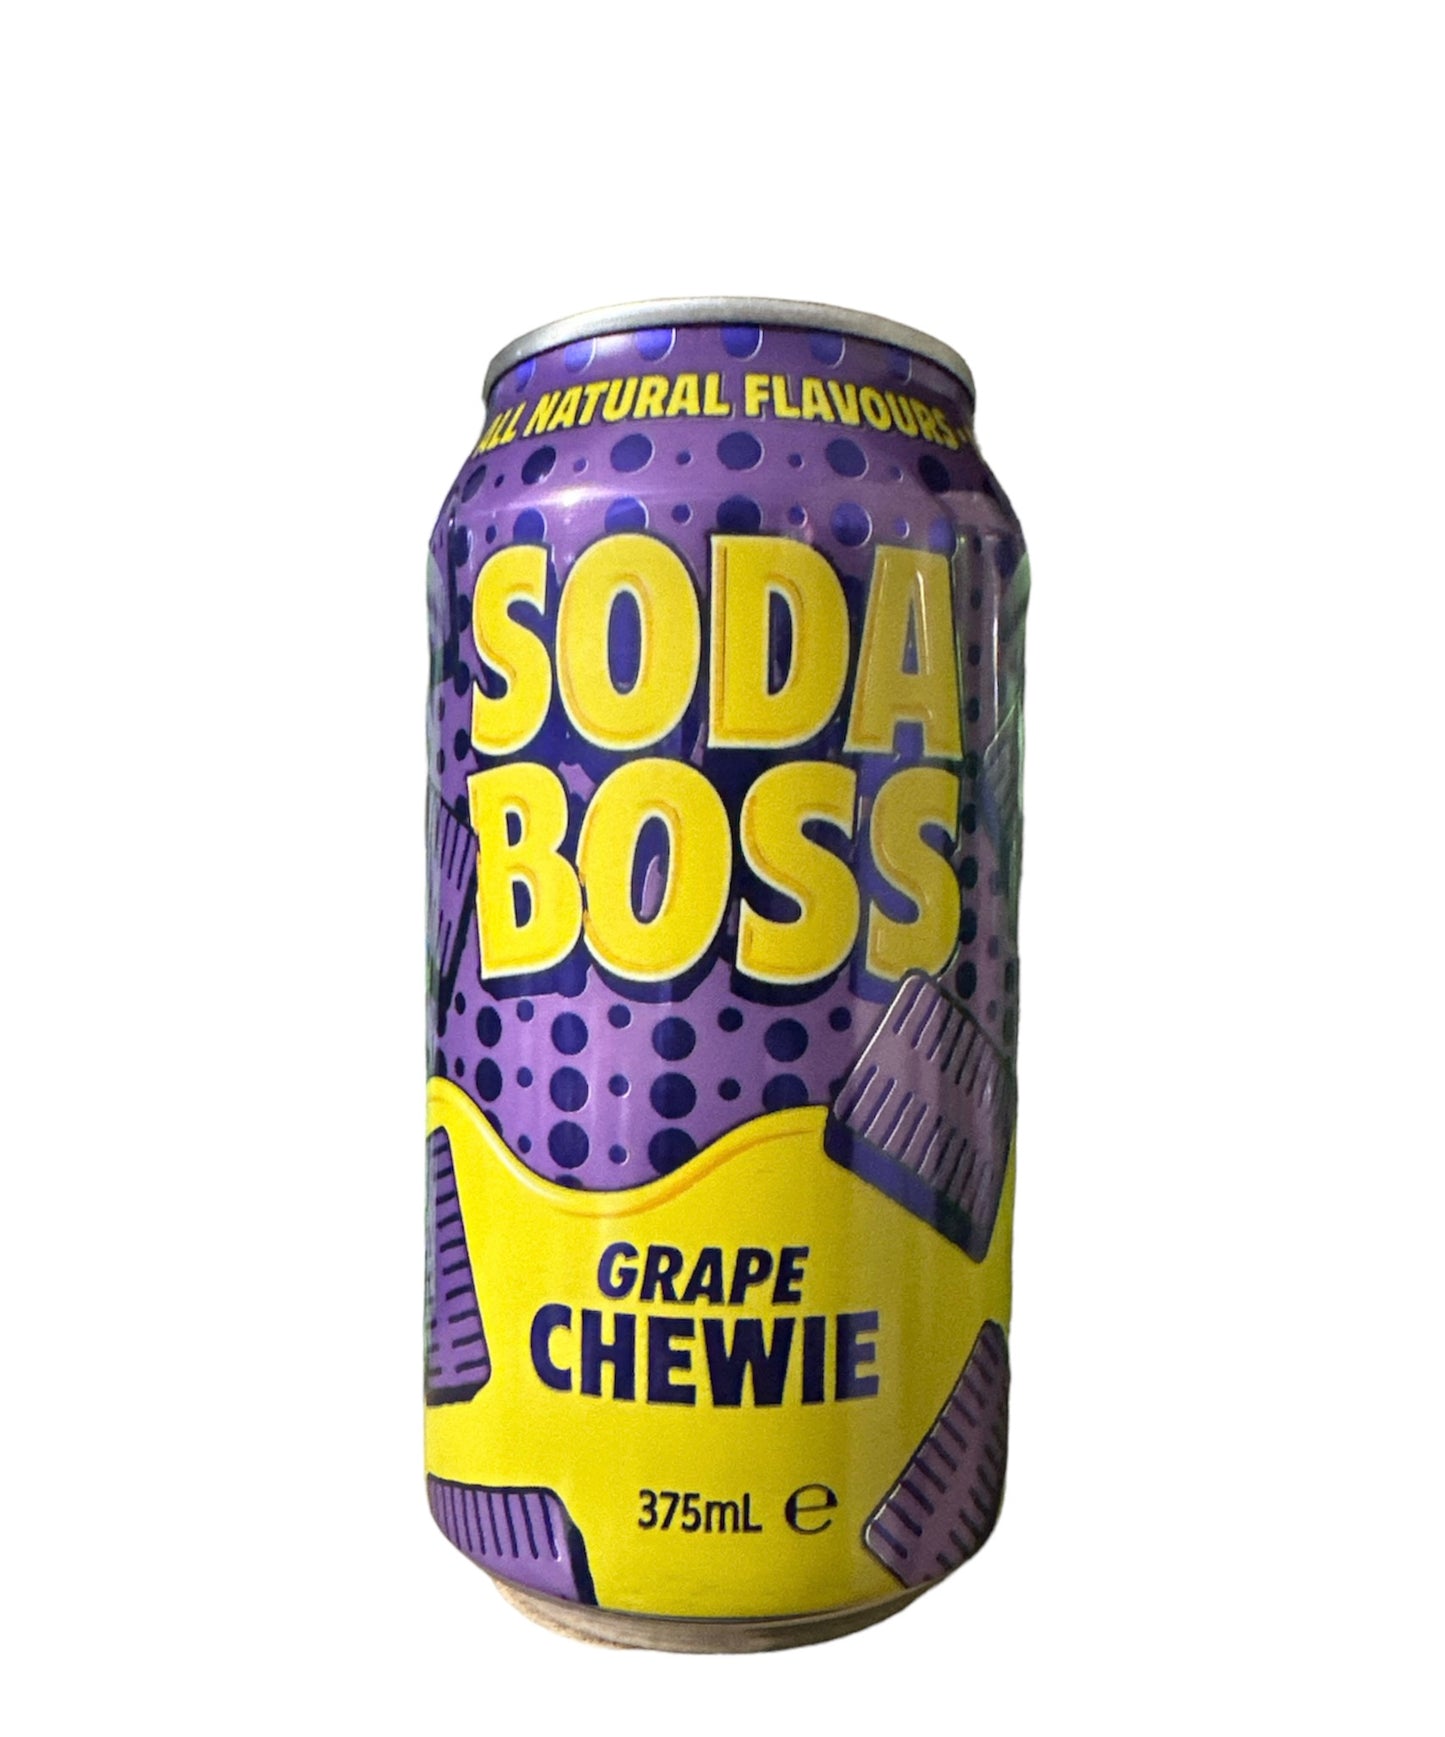 Soda Boss Grape Chewie